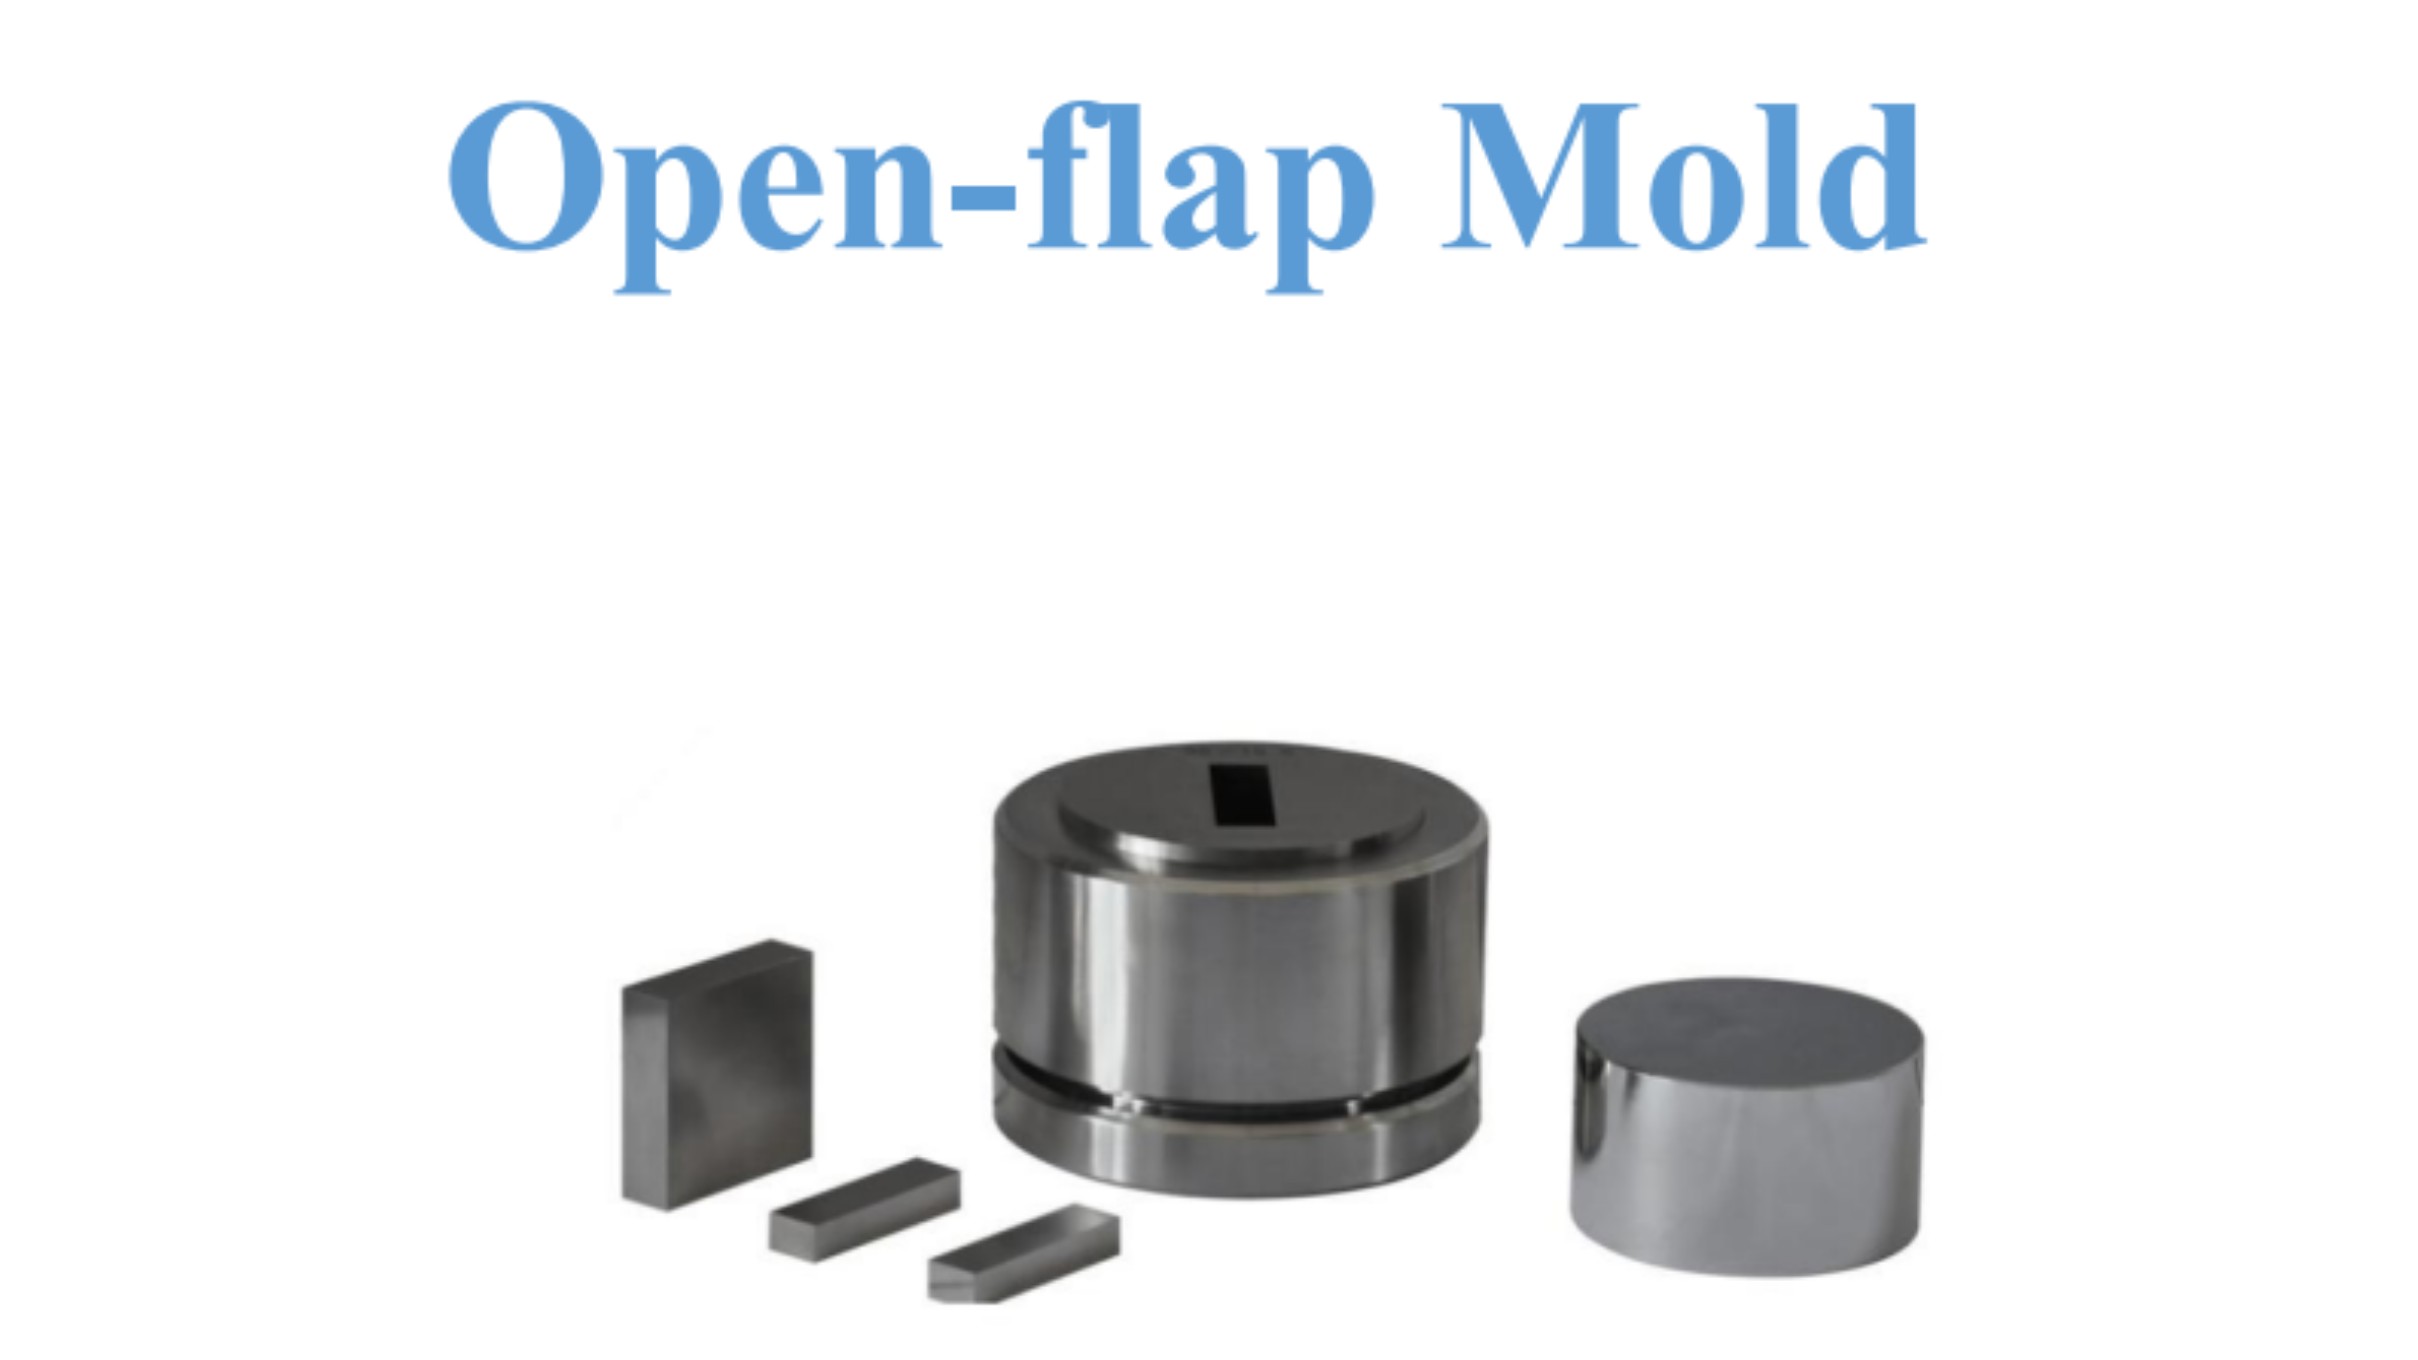 Open-flap Mold